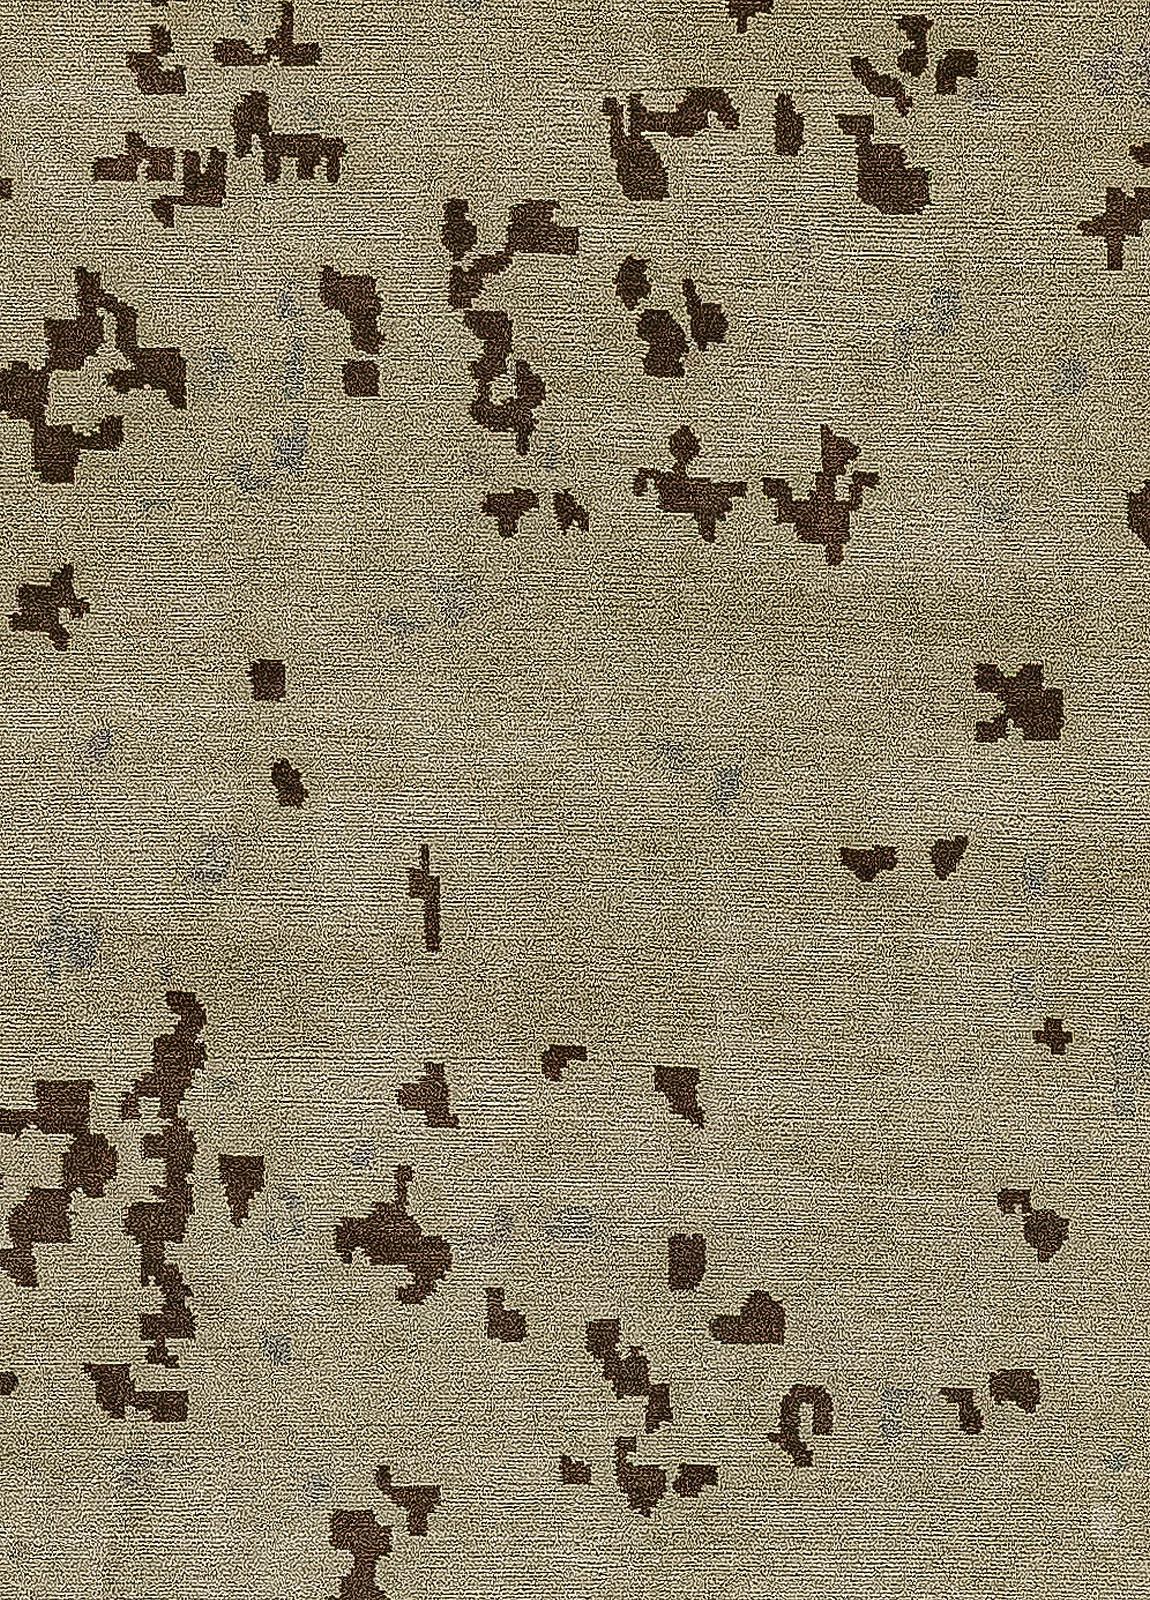 Zeitgenössischer abstrakter handgefertigter Teppich aus Seide und Wolle von Doris Leslie Blau.
Größe: 10'2